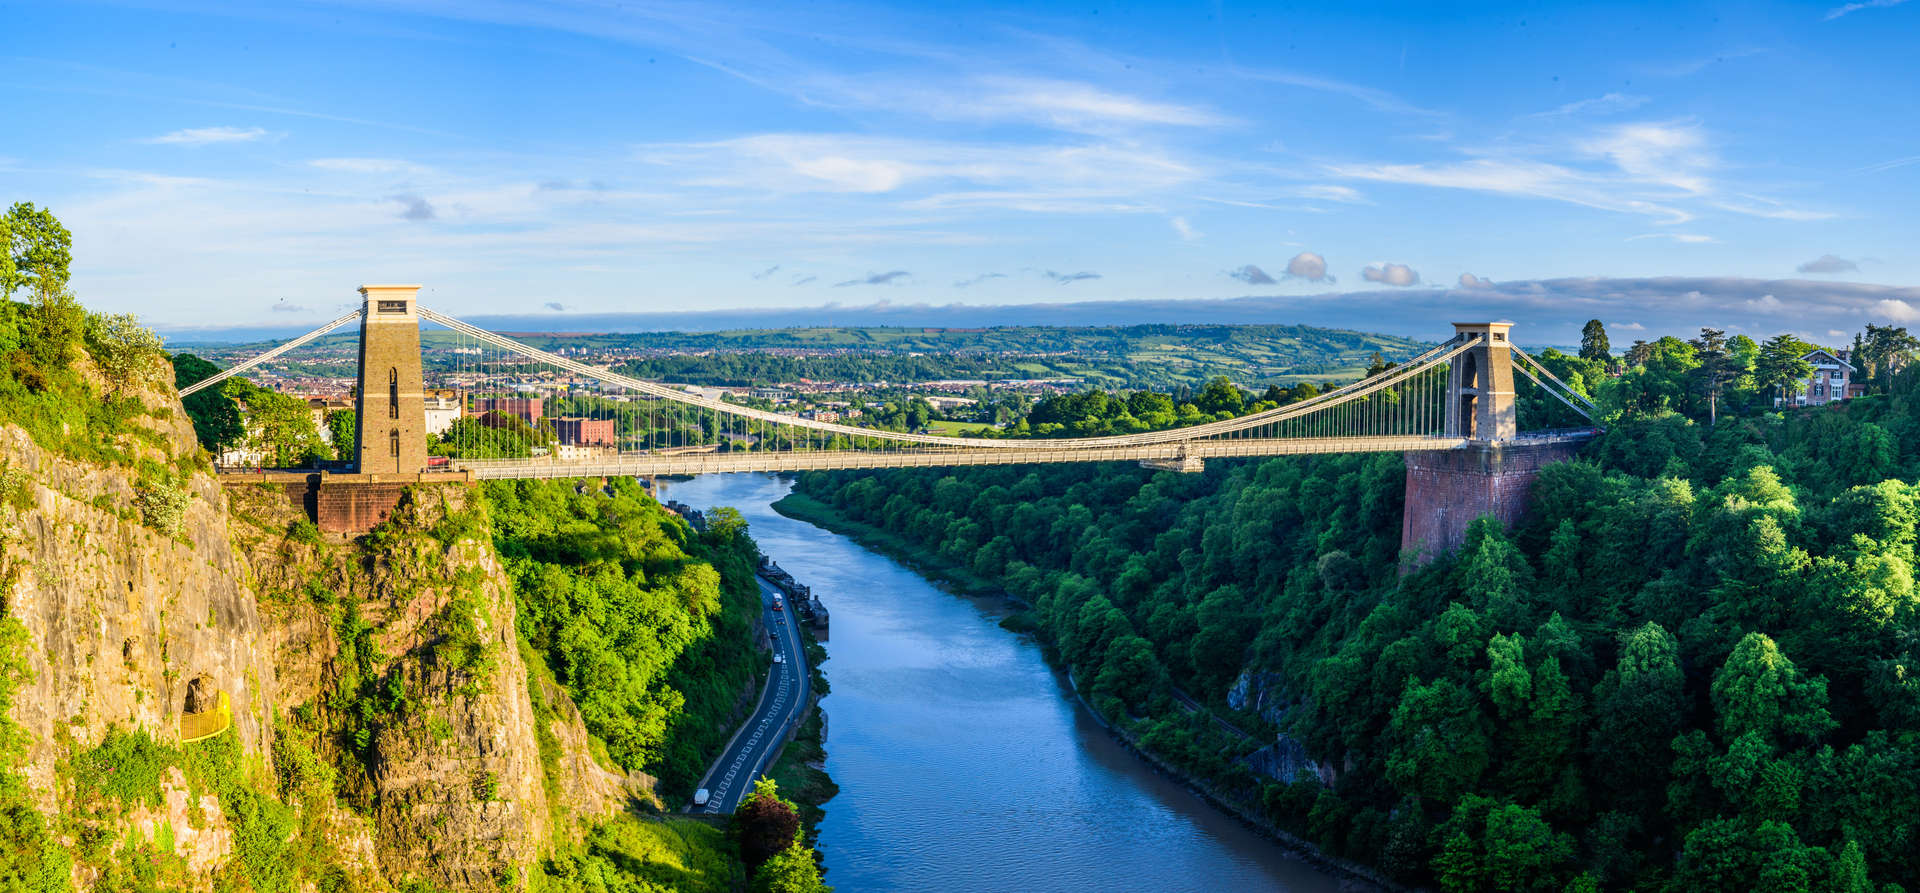 Bridge Over River, Bristol